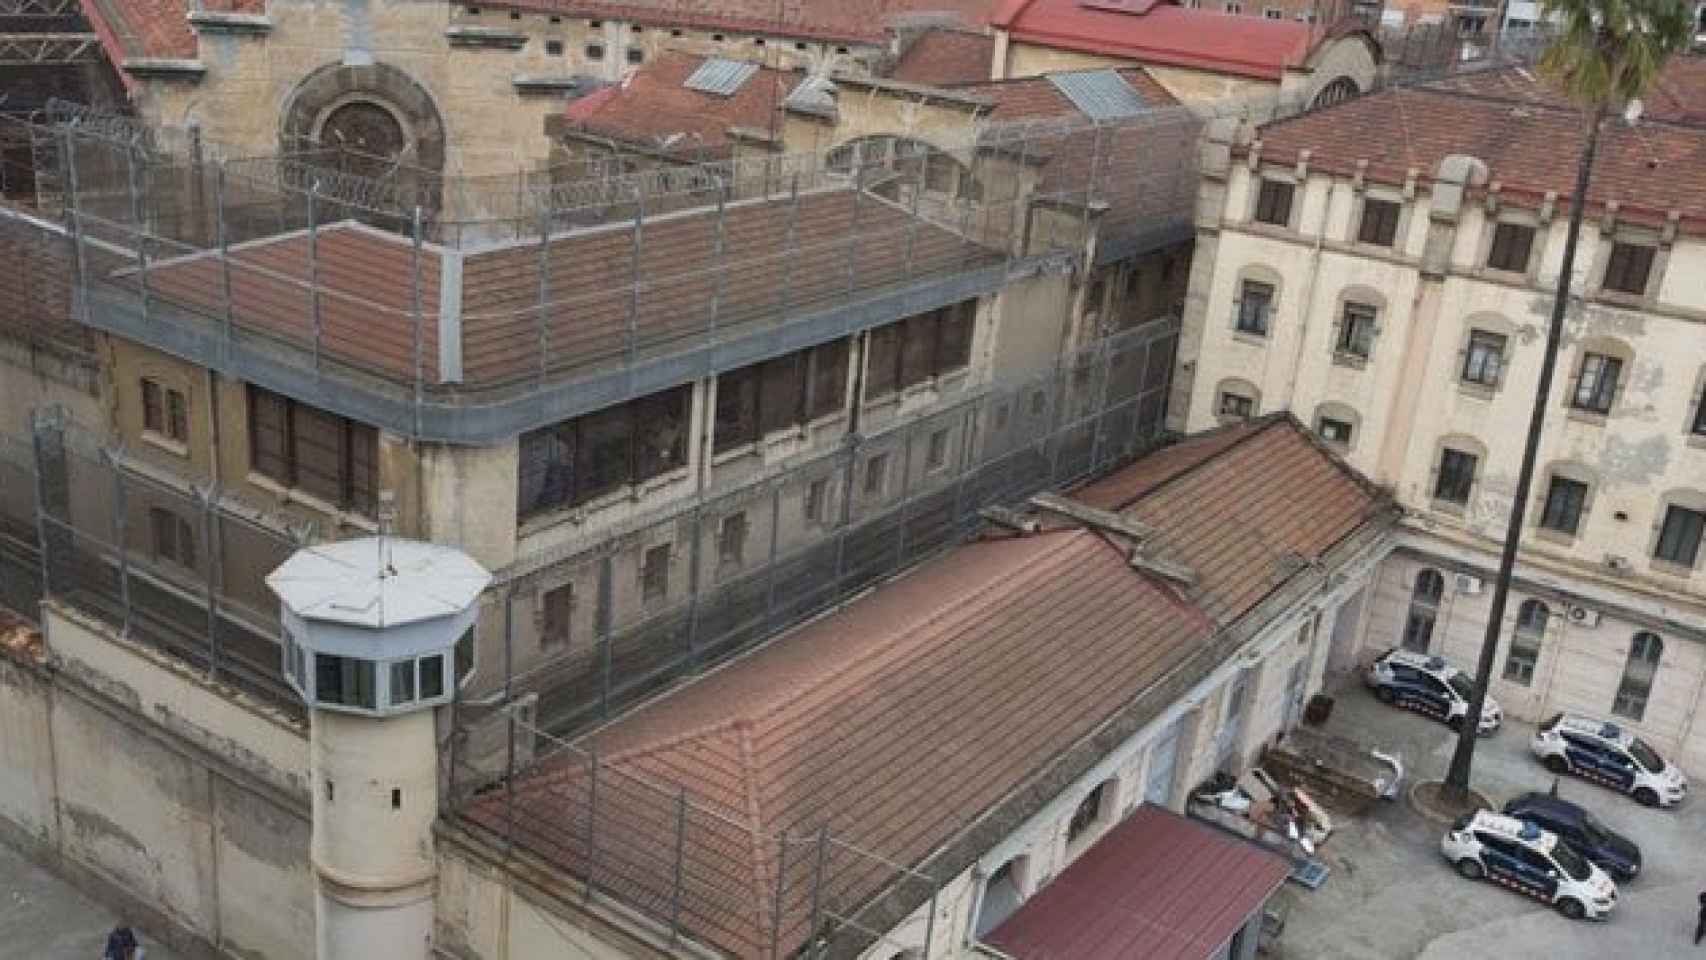 Vista aérea de la cárcel Modelo de Barcelona / CG